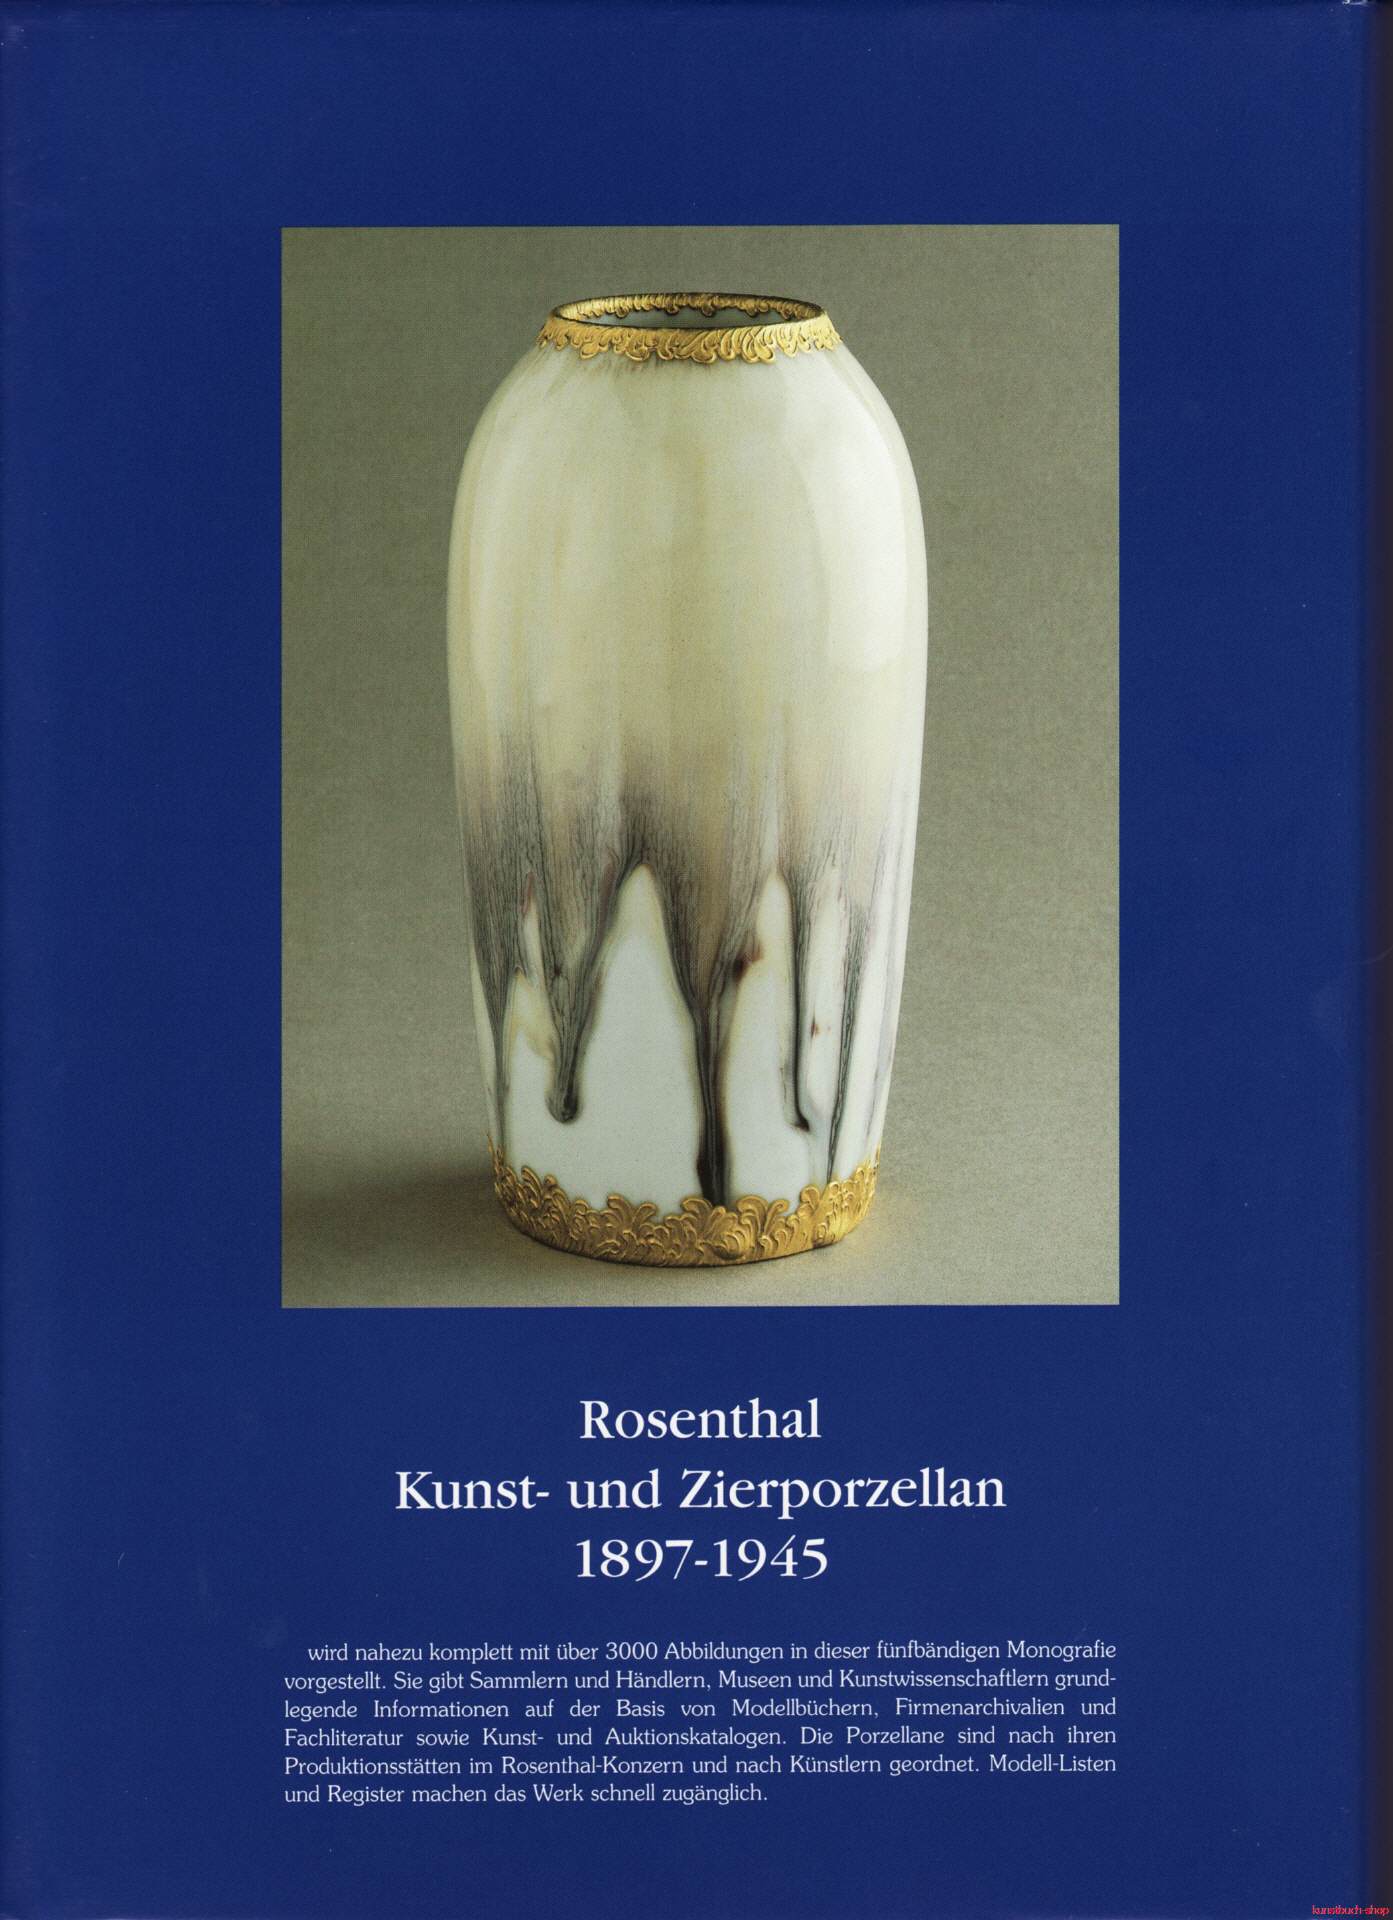 Rosenthal Kunst- und Zierporzellan 1897-1945. 5 Bände